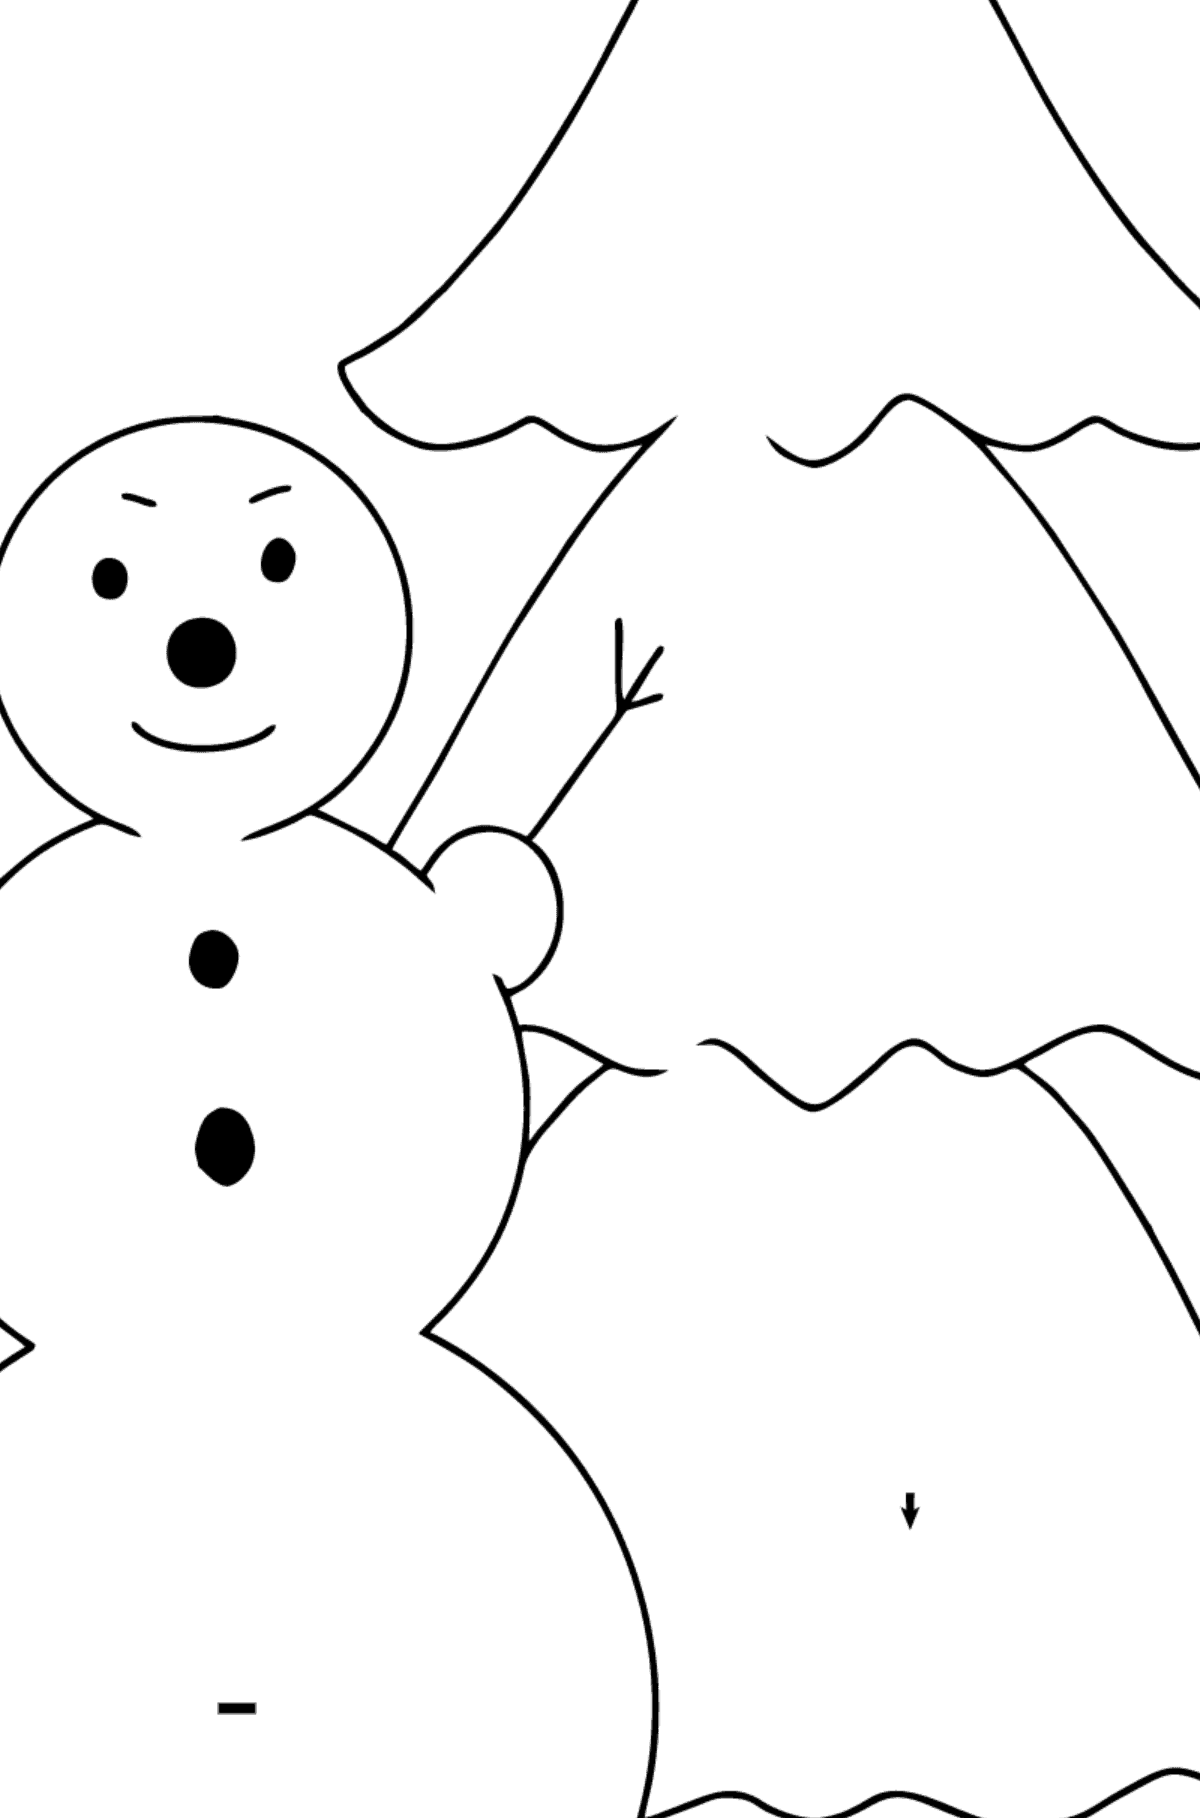 Tegning til farvning snemand og træ (let) - Farvelægning af symbolerne for børn